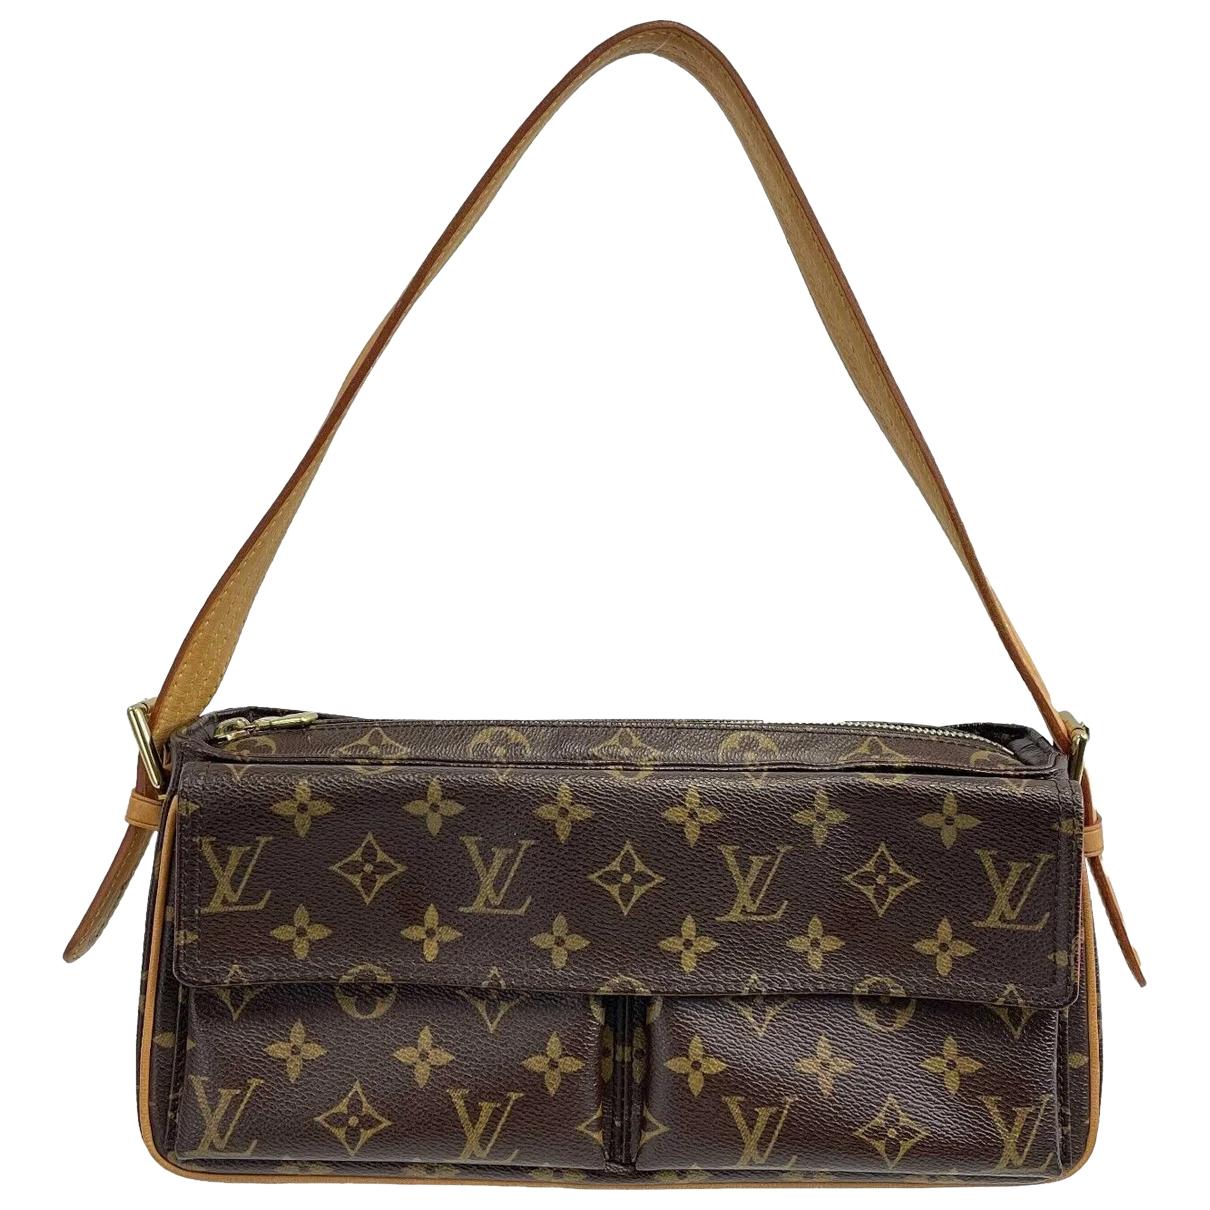 Louis Vuitton - Authenticated Viva Cité Handbag - Leather Brown for Women, Very Good Condition